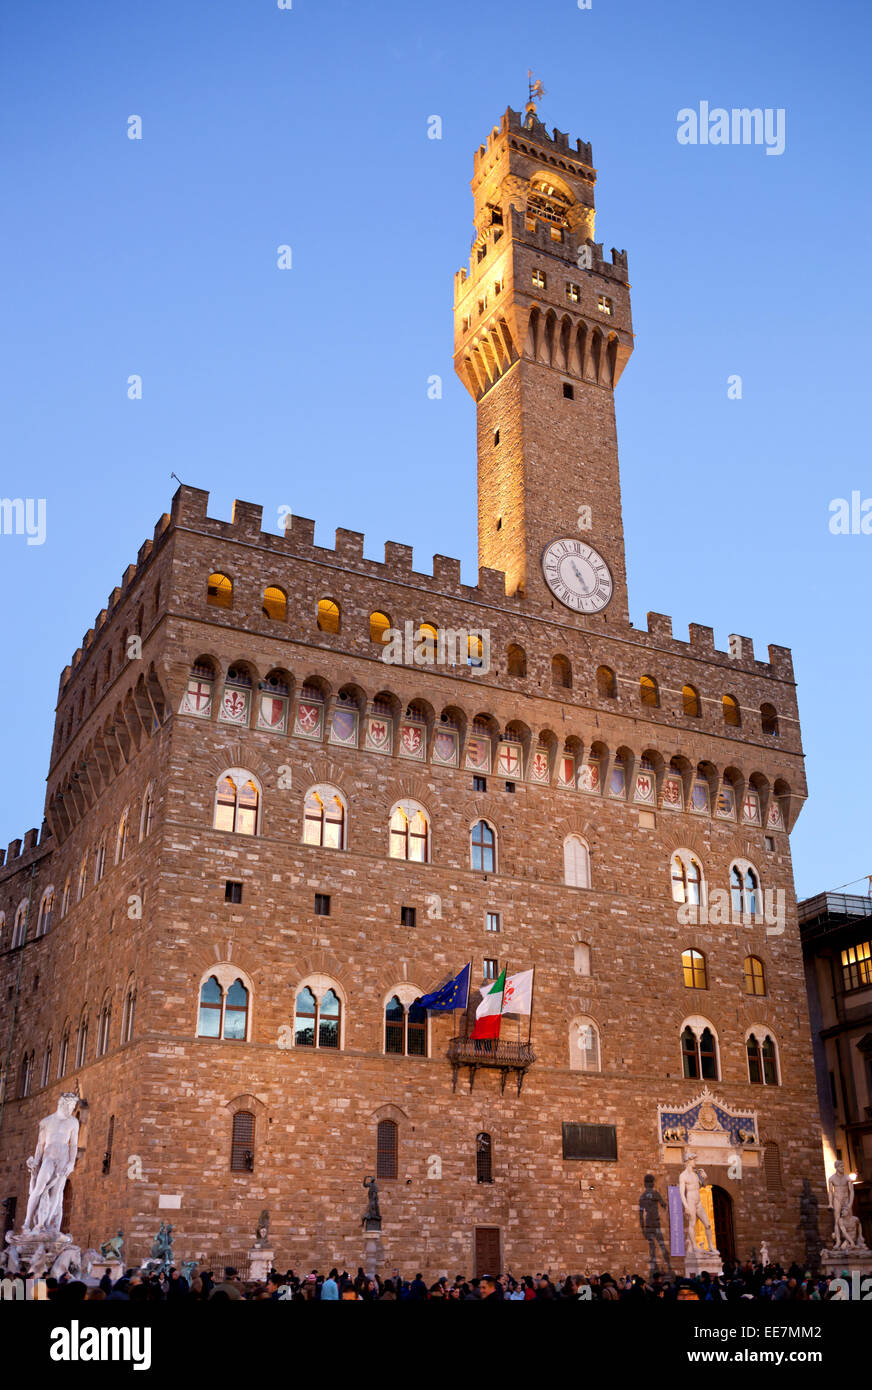 El Palazzo Vecchio (palacio viejo) un enorme Palacio Fortaleza románica, es la sede del Ayuntamiento de Florencia, Italia. Foto de stock